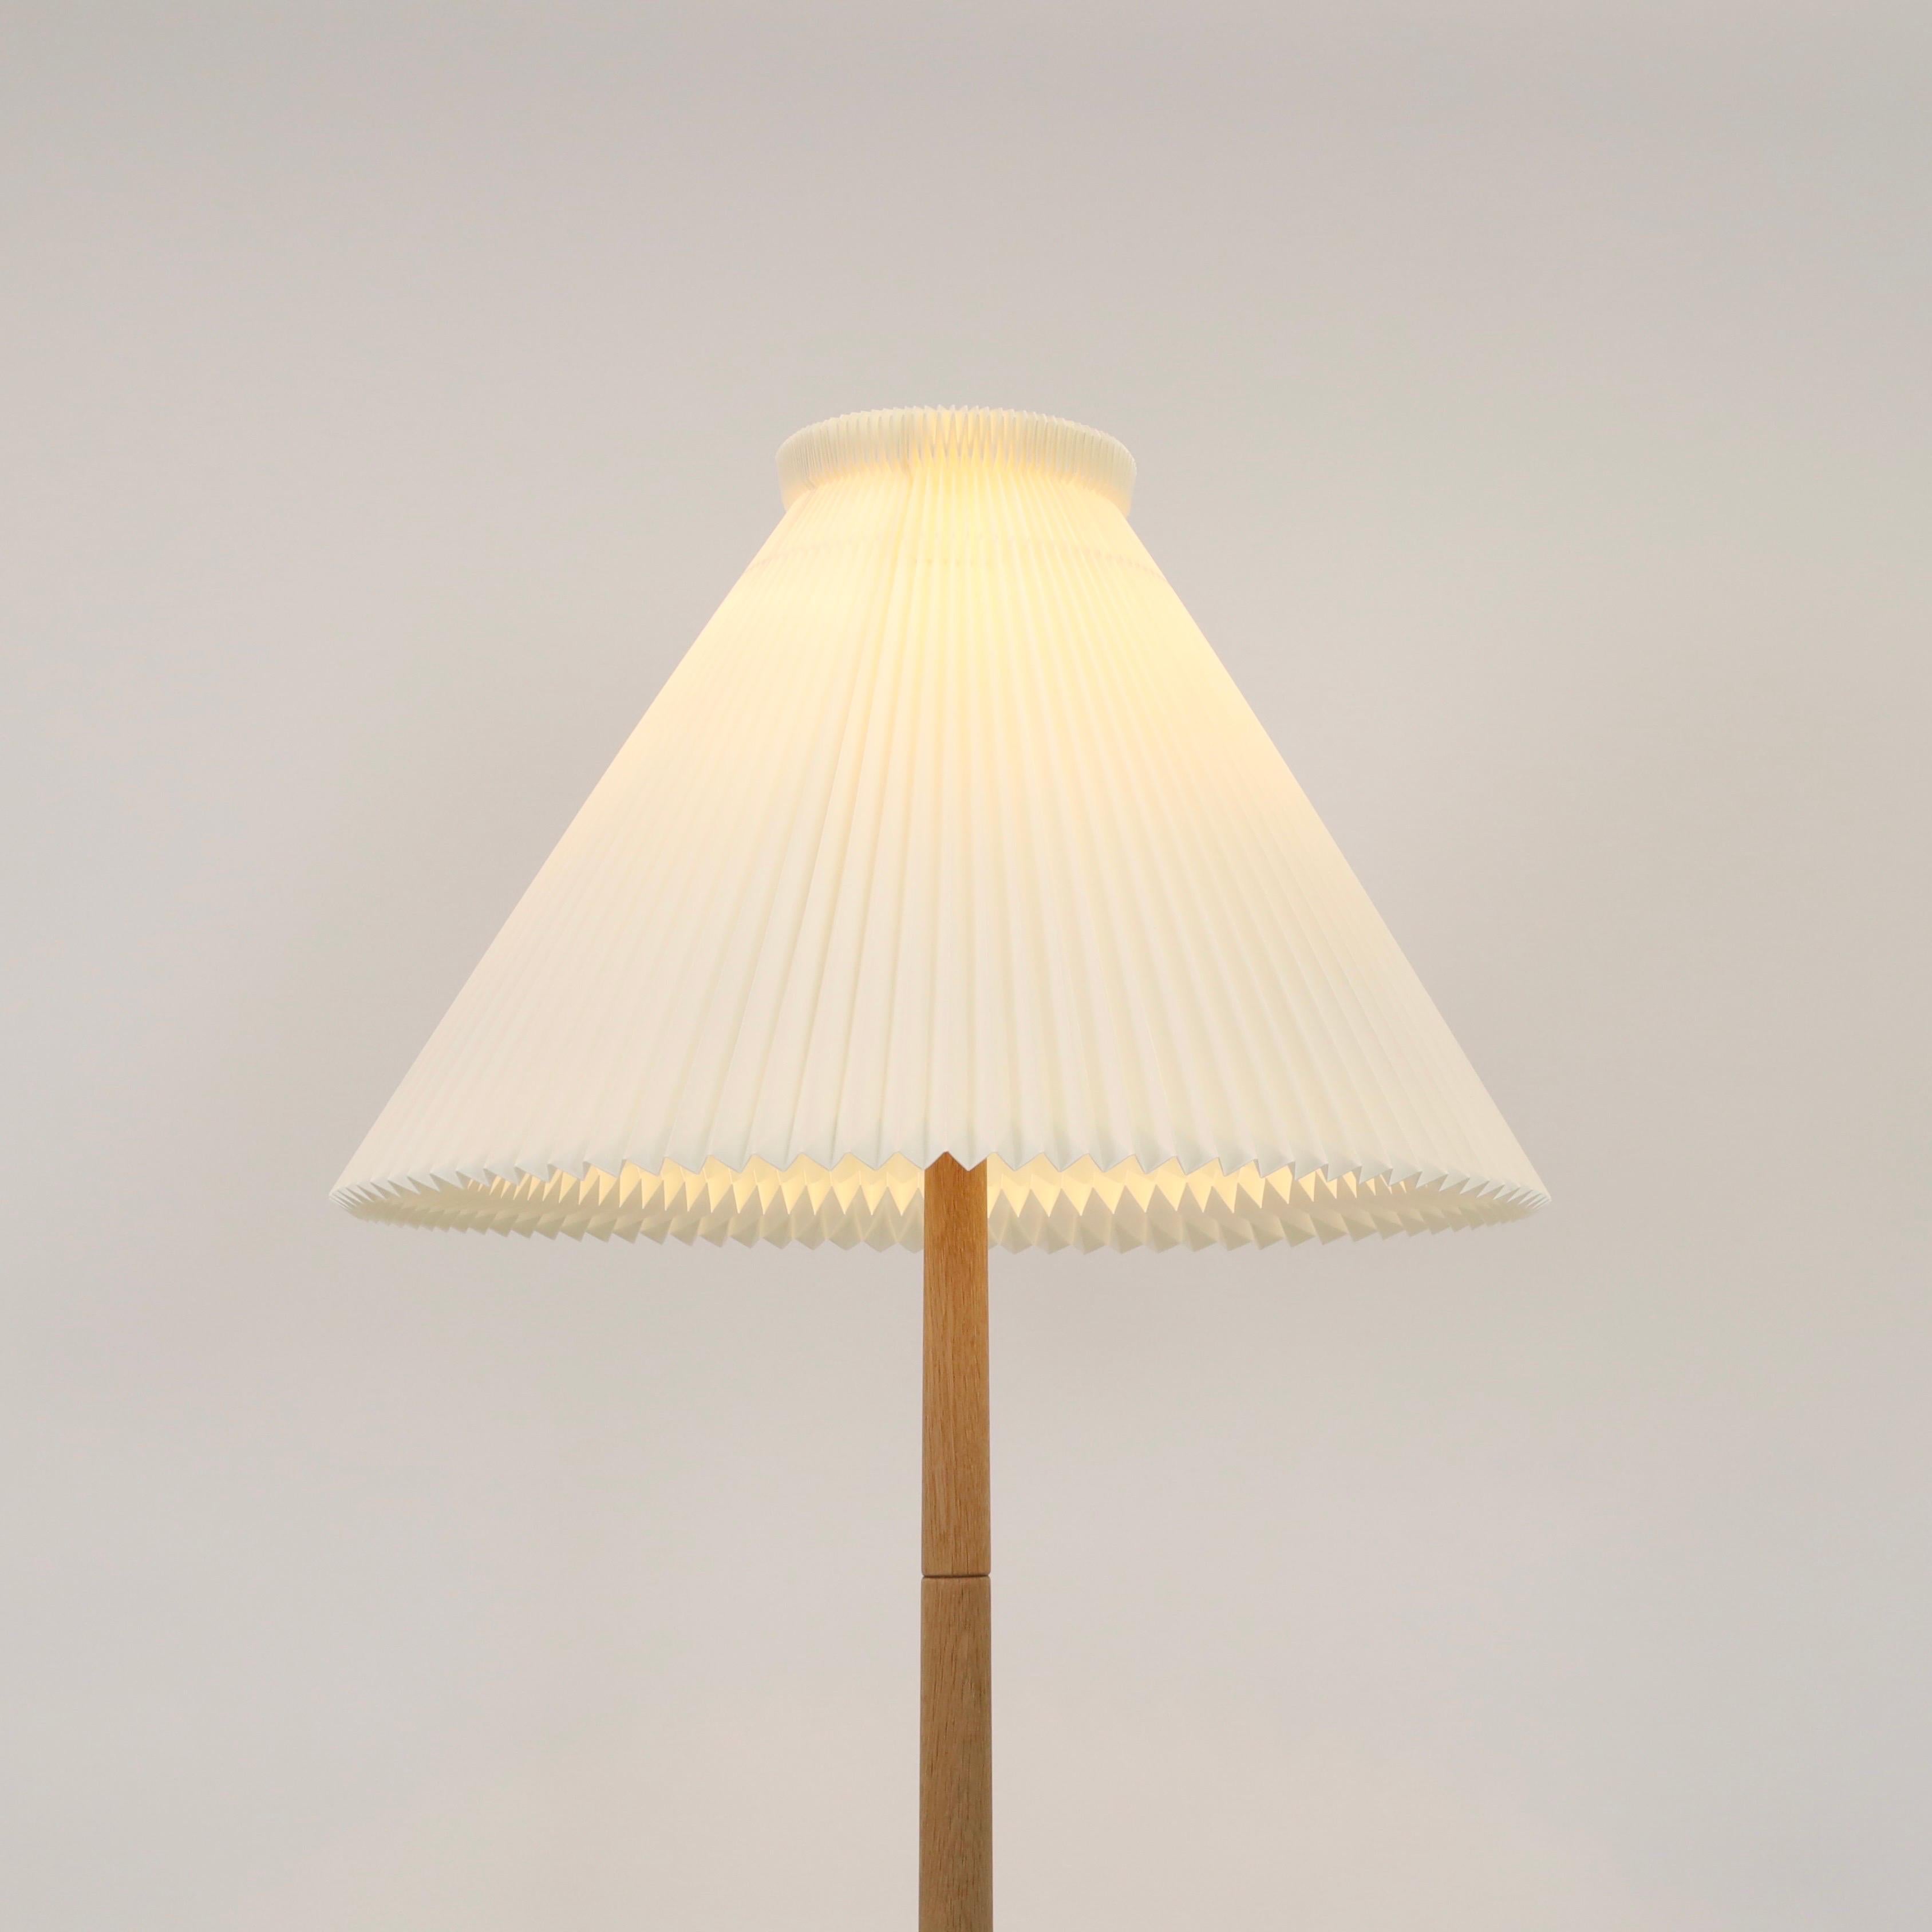 Plastic Danish Modern oak wood floor lamp by Lisbeth Brams, 1960s, Denmark For Sale